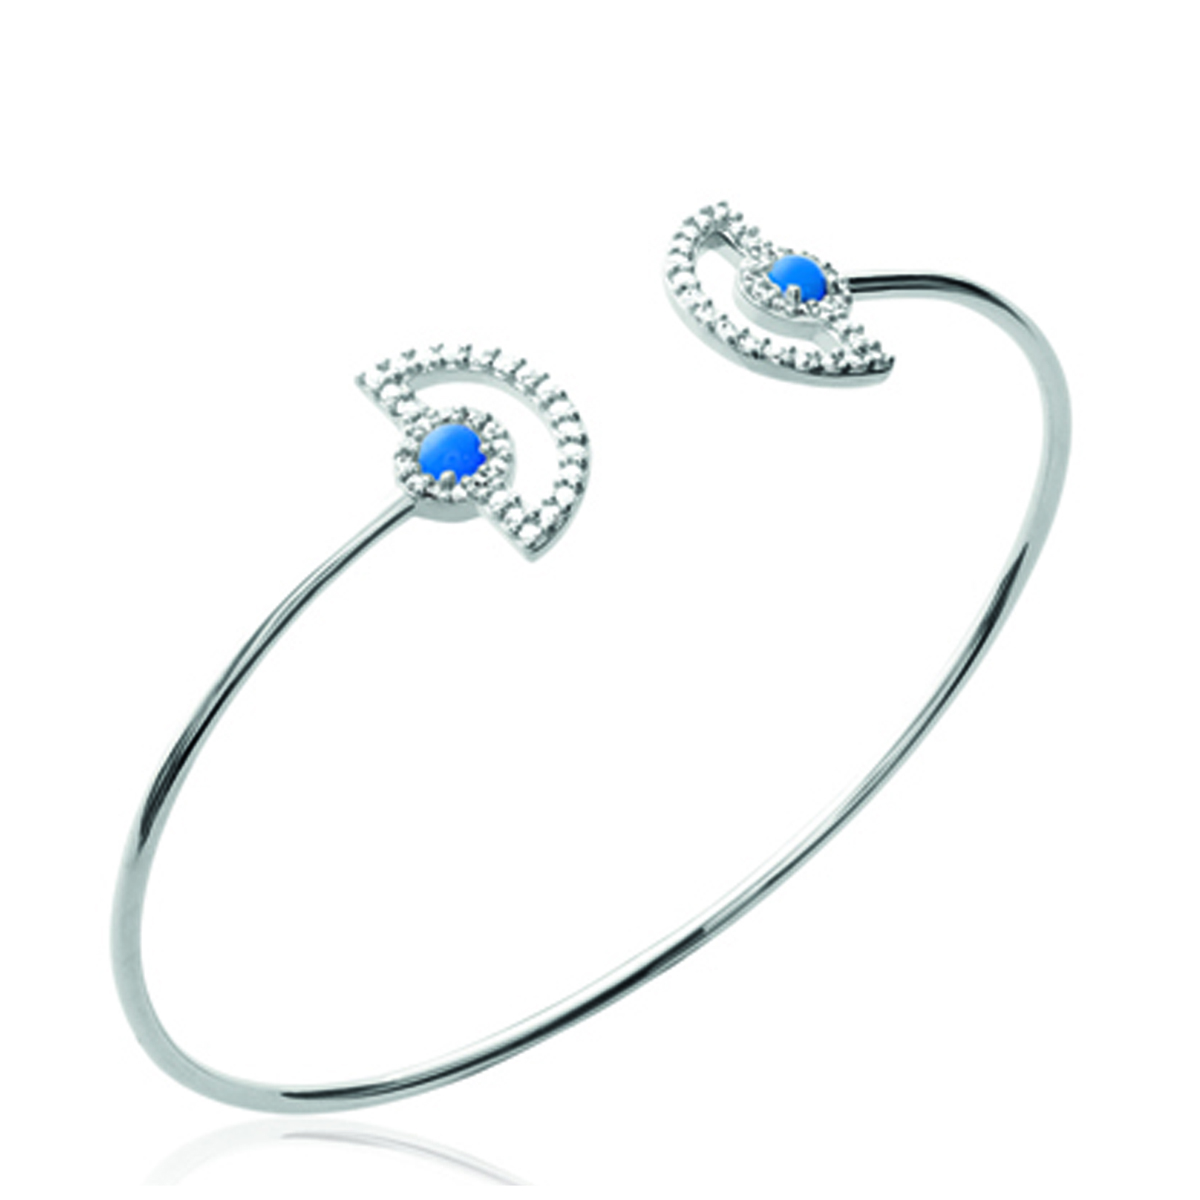 Bracelet argent ouvert \'Princesse Opale\' bleu blanc argenté (rhodié) - 58 mm, 13x8 mm - [P0178]